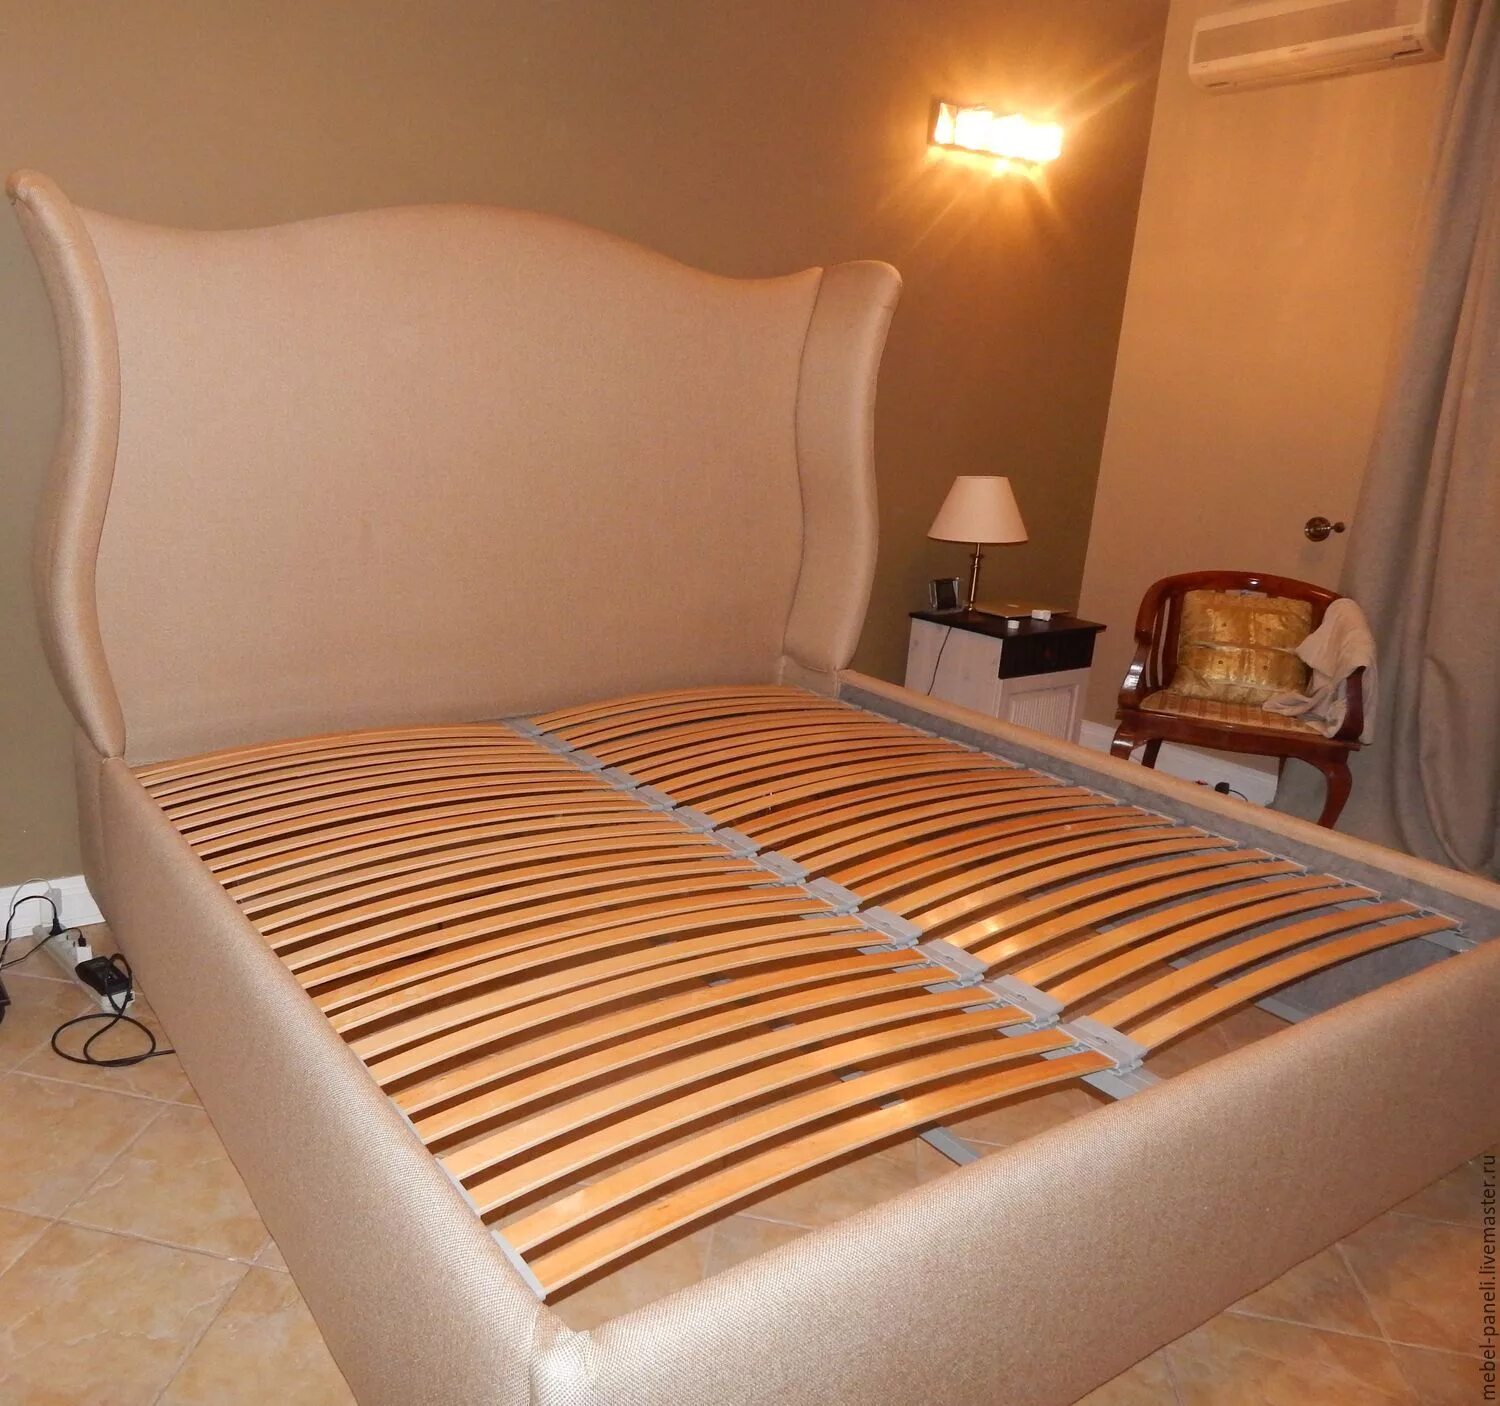 Кровать Орматек rest 1 160x200. Изголовье кровати. Кровать с мягким изголовьем. Спинка кровати.